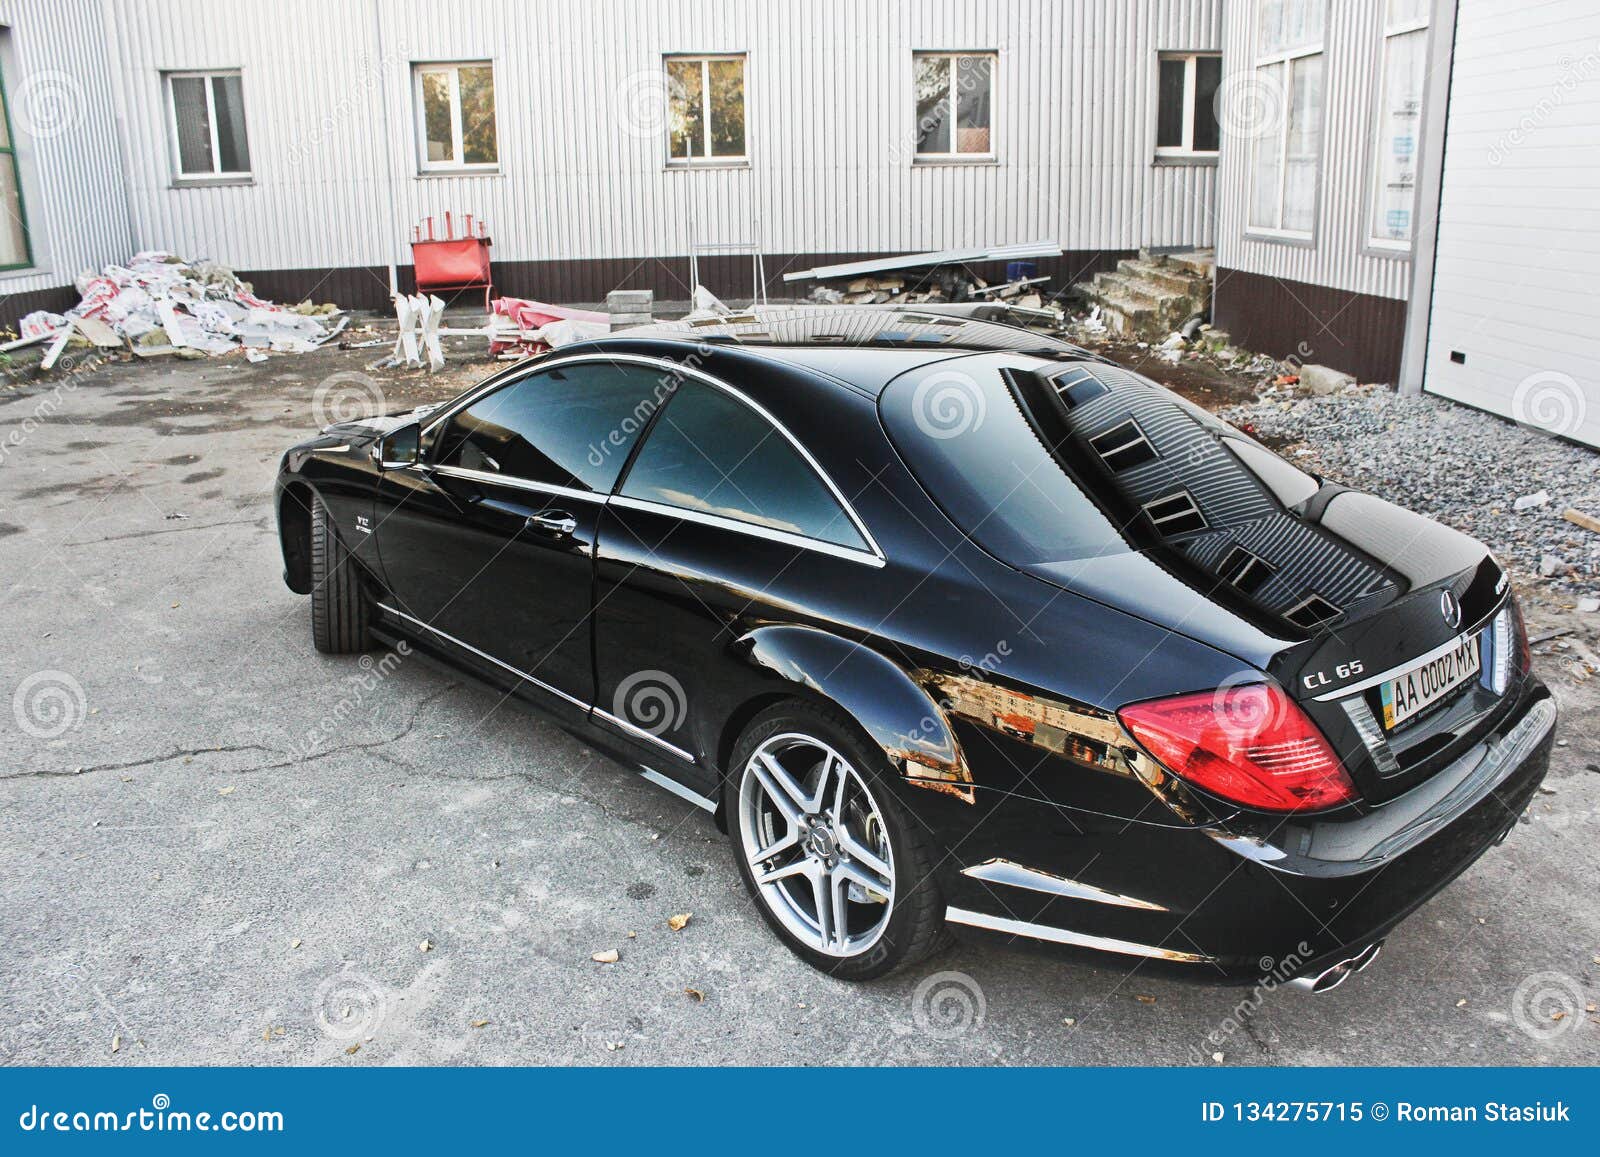 April 12 2016 Kiev Ukraine Mercedes Benz Cl 65 Amg V12 Bi Turbo Editorial Image Image Of Kiev Plastic 134275715